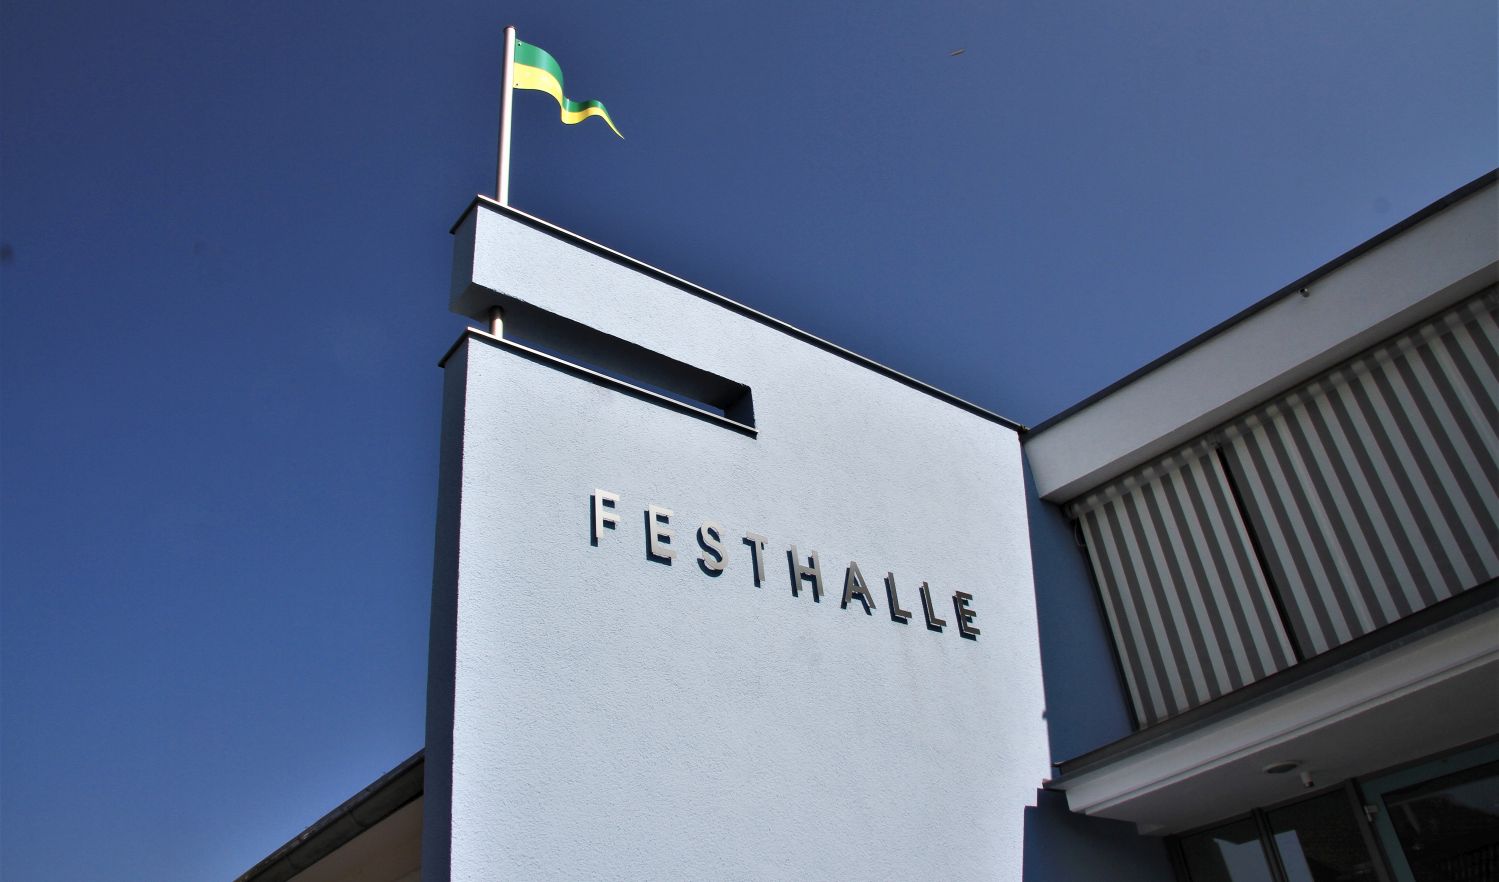 Teilansicht der Fassade der Festhalle Rutesheim Richtung Himmel samt Fahne mit den Stadtfarben grün gelb